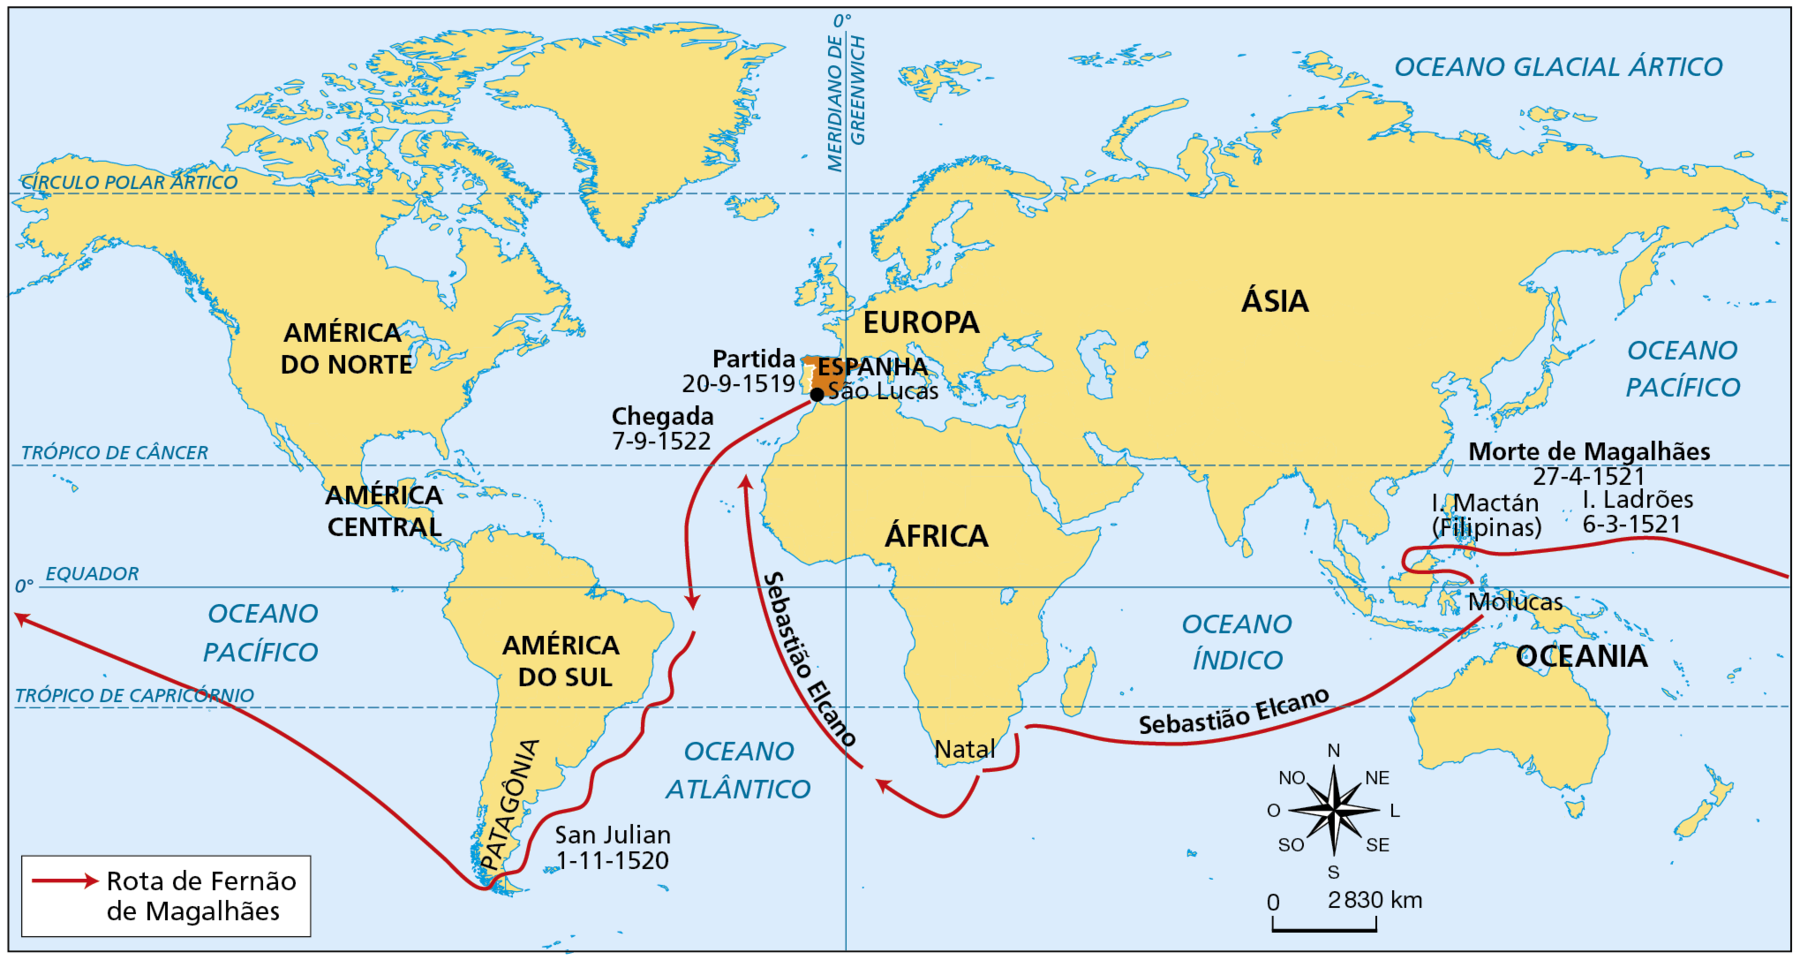 Mapa. A expedição de Fernão de Magalhães (1519-1522). Mapa-múndi com uma rota marítima traçadas com uma seta vermelha. O território da Espanha está destacado em laranja. Há destaque para: a América do Norte, a América Central, a América do Sul, a Patagônia, a Baía de San Julián, a Europa, a Espanha, a África, a Ásia e a Oceania.  Uma seta de cor vermelha indica: 'Rota de Fernão de Magalhães'. Há datas de partida e de chegada em diferentes localidades. A expedição de Fernão de Magalhães partiu em 20 de setembro de 1519 da região de São Lucas, no sul da Espanha. Navegou pelo Oceano Atlântico no rumo sul, cruzou a Linha do Equador,  contornou a costa da América do Sul, atingindo a baía de San Julian, na costa da atual Argentina, em primeiro de novembro de 1520. Atravessou o Estreito de Magalhães, no extremo sul da América do Sul, na região da Patagônia, atingindo o Oceano Pacífico por onde navegou até chegar à Ilha dos Ladrões, atuais Ilhas Marianas na região da Micronésia, na Oceania, em 6 de março de 1521. Seguiu para as Ilhas Mactán, nas Filipinas, onde Fernão de Magalhães foi morto em 27 de abril de 1521. Sob o comando de Sebastião Elcano, a expedição rumou para as Ilhas Molucas, navegou pelo Oceano Índico, passando ao sul da Ilha de Madagascar, contornou o sul da África na região do Cabo da Boa Esperança e navegou pelo Atlântico rumo ao norte. A expedição retornou à Espanha em 7 de setembro de 1522. No canto inferior direito, rosa dos ventos e escala de 0 a 2830 quilômetros.